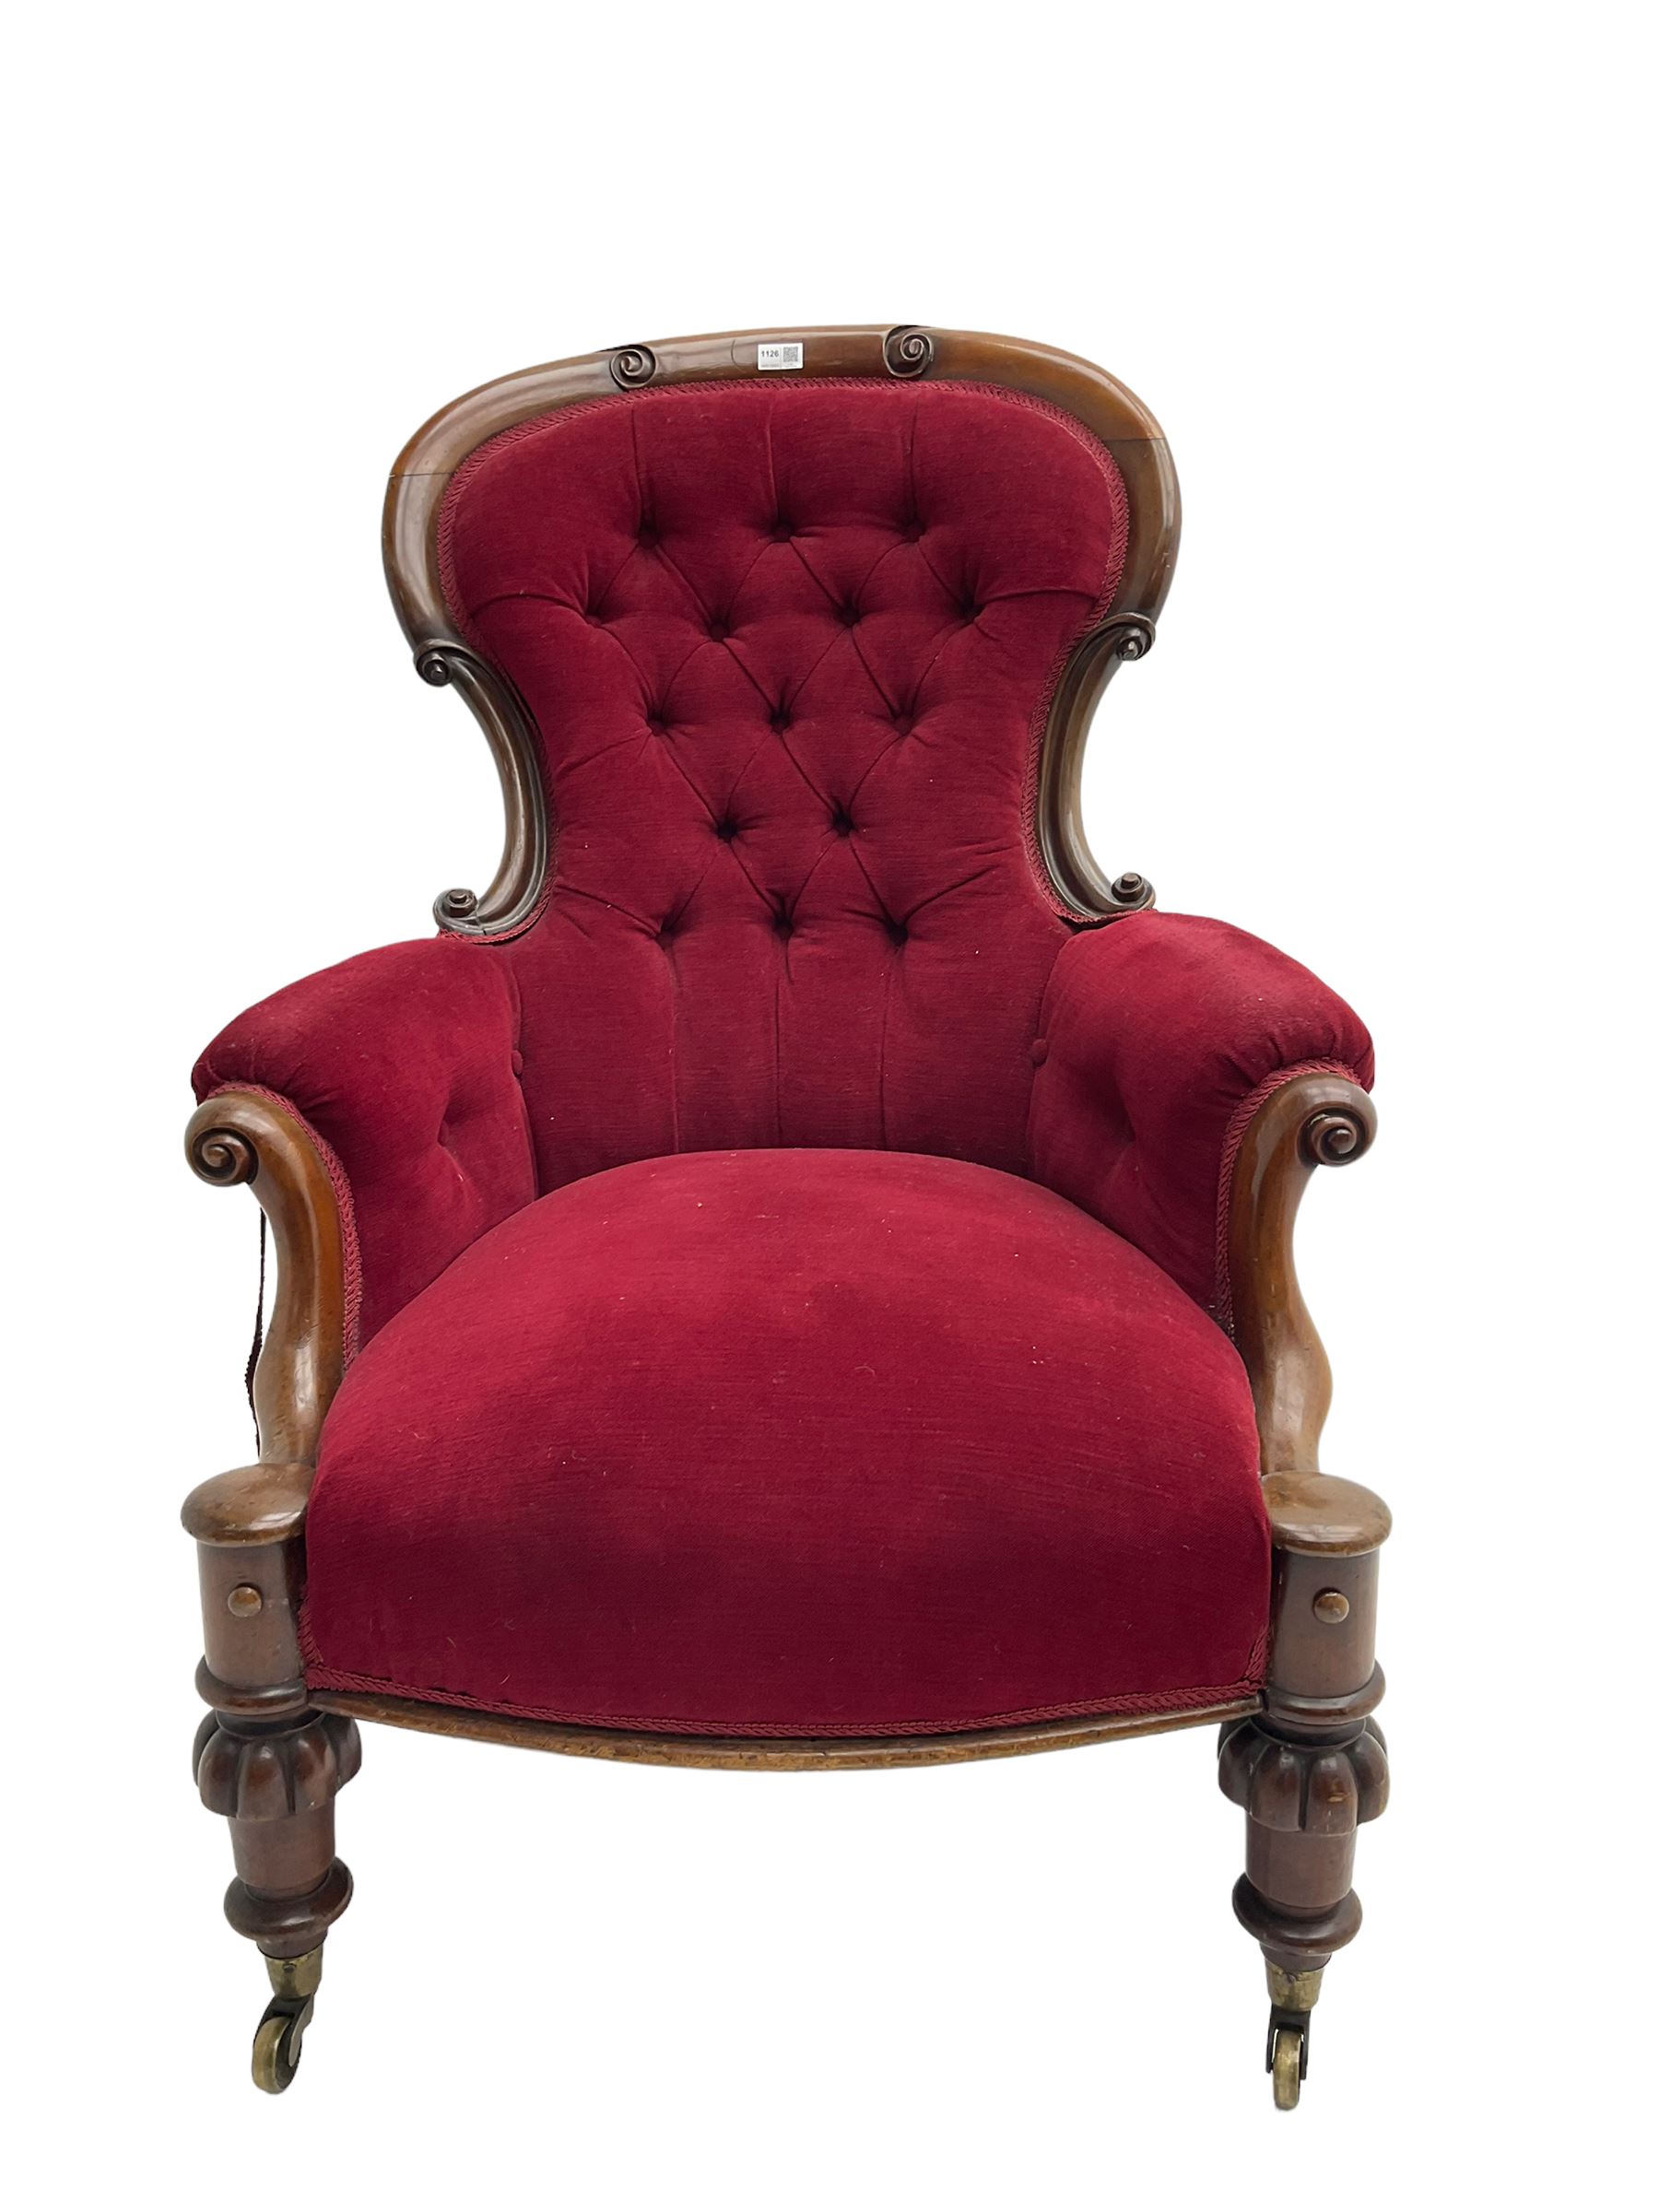 Victorian mahogany armchair